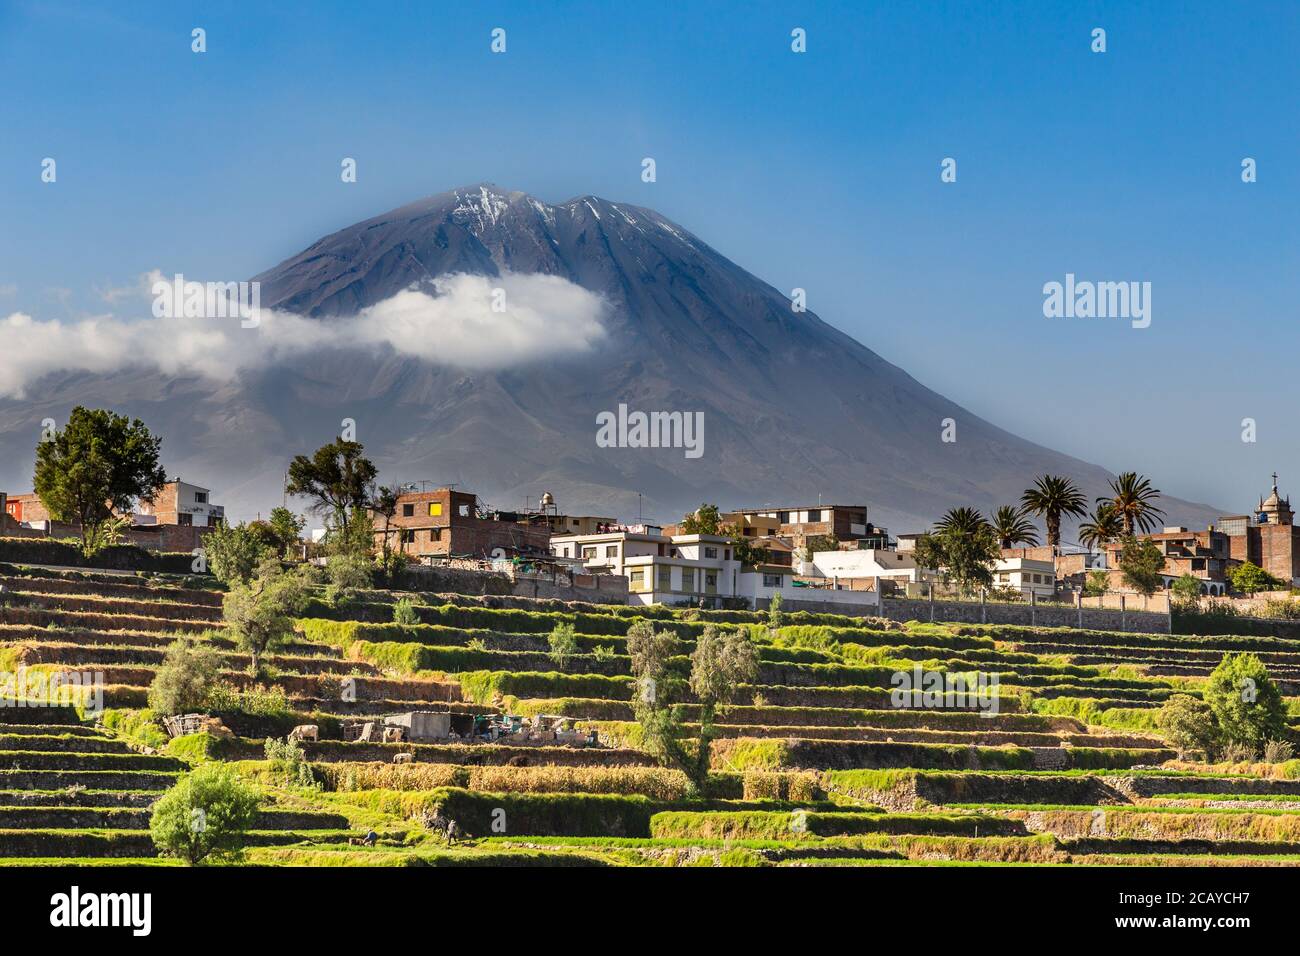 Vulcano Mitti dormiente sui campi e le case della città peruviana di Arequipa, Perù Foto Stock